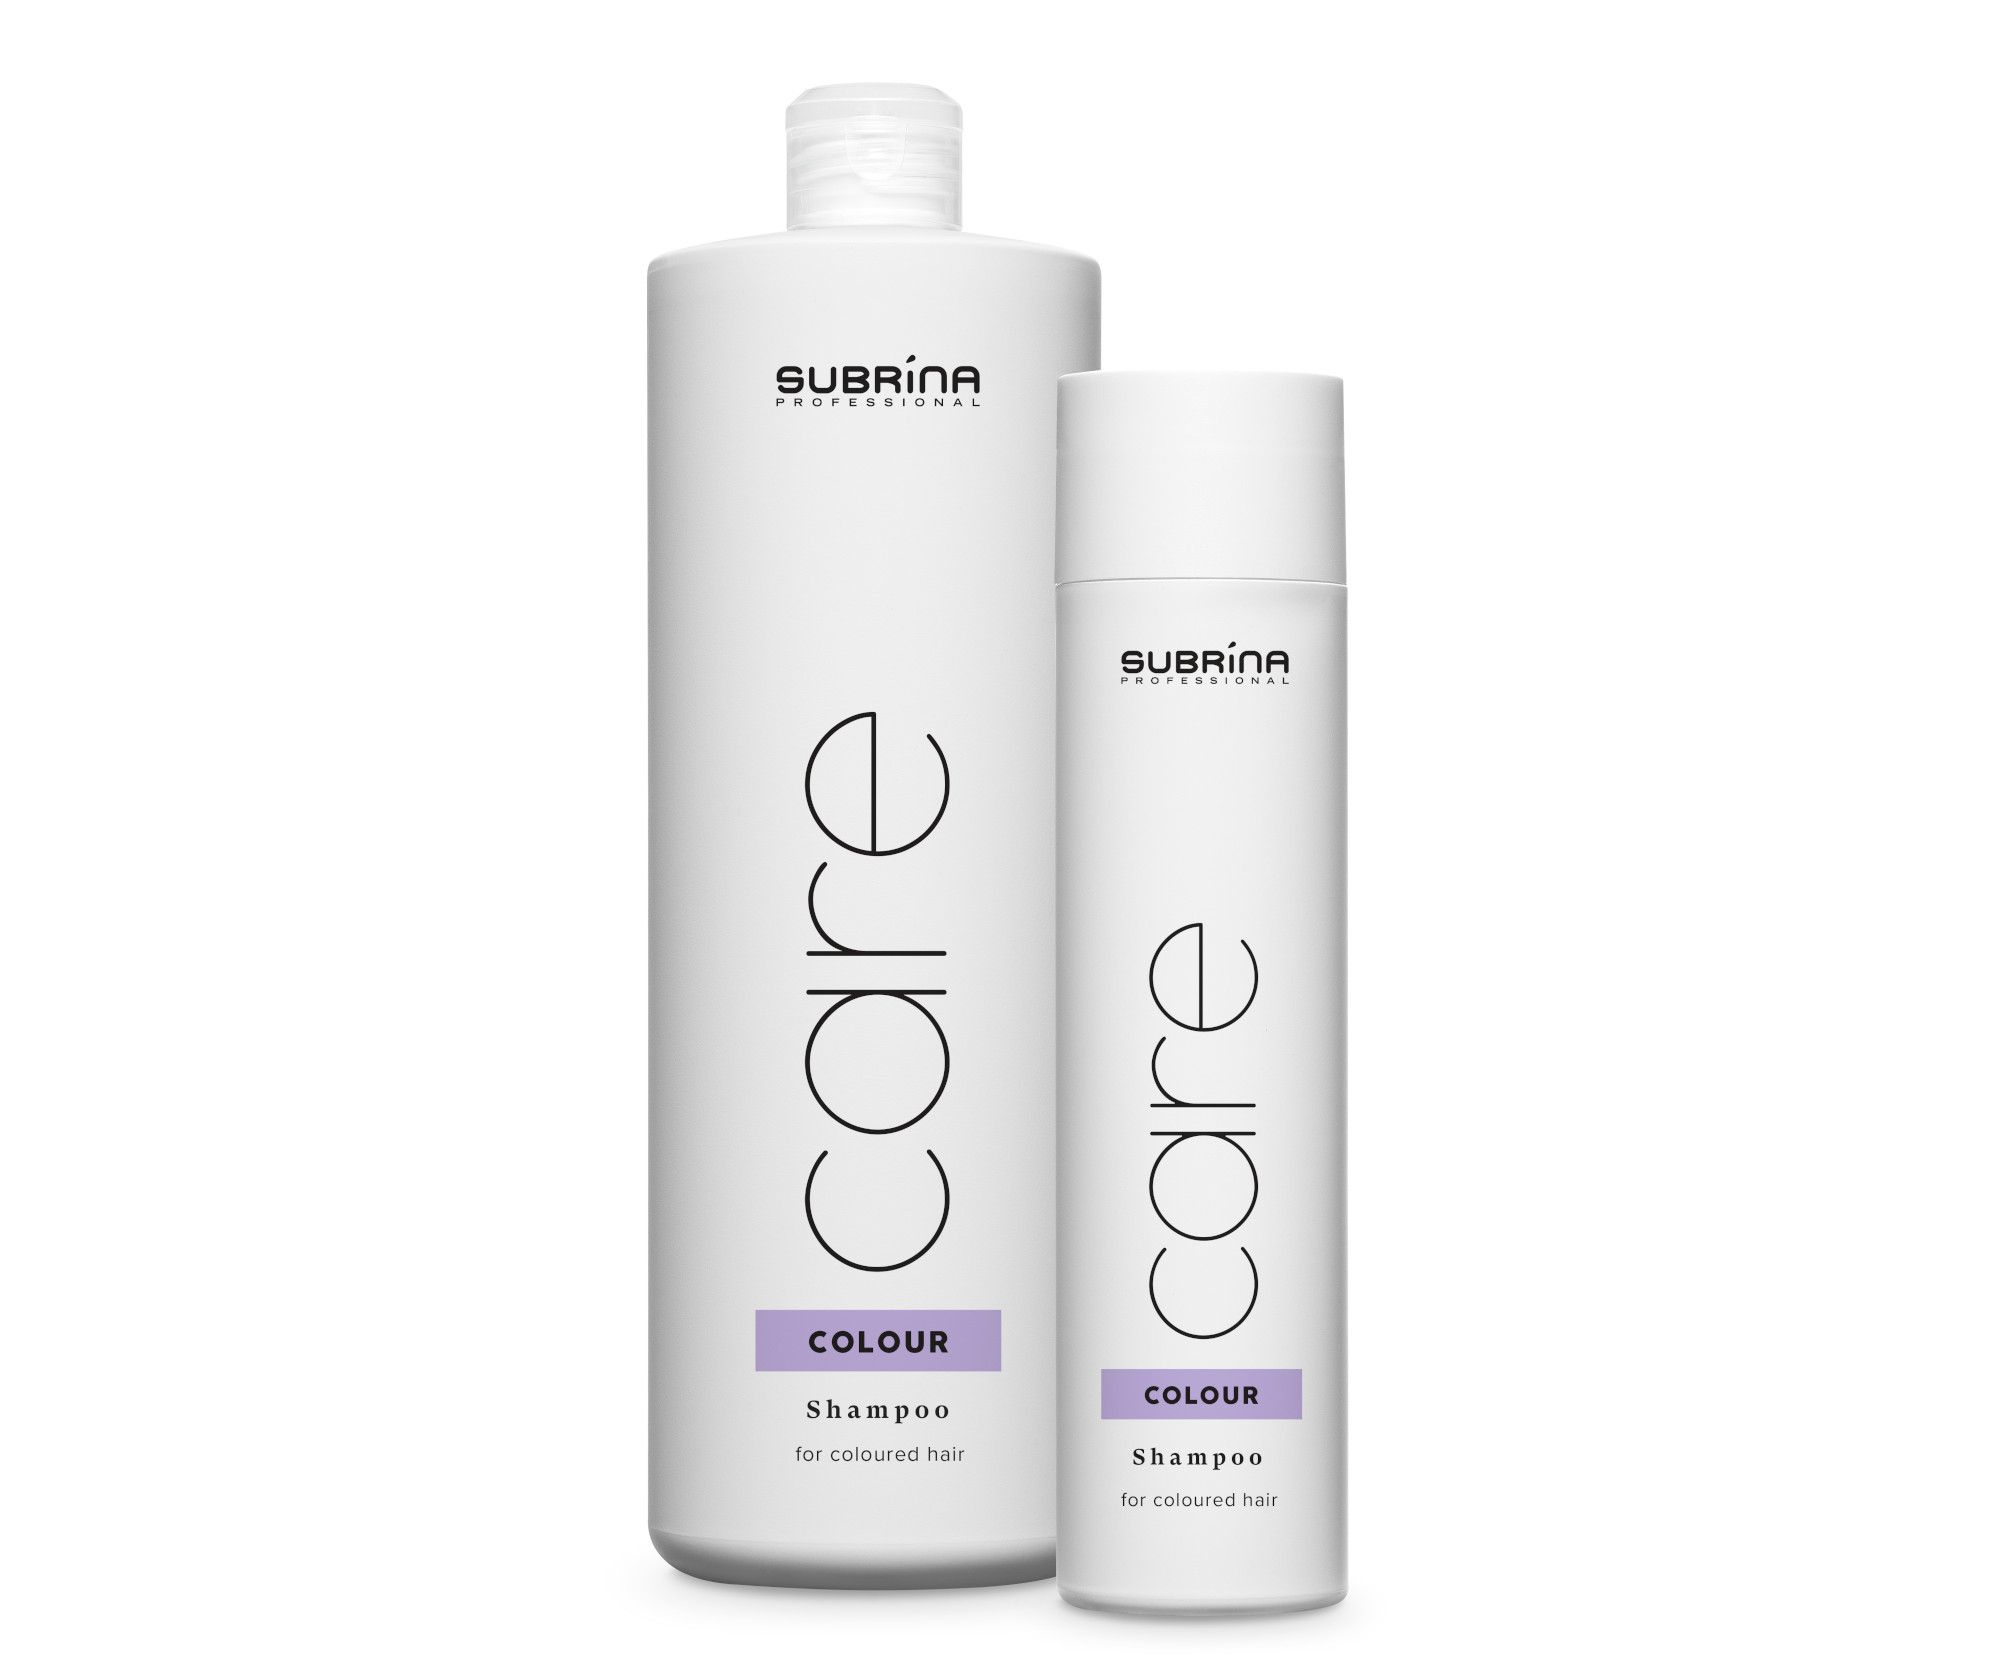 Šampon pro barvené vlasy Subrina Professional Care Colour - 1000 ml + šampon 250 ml zdarma + dárek zdarma